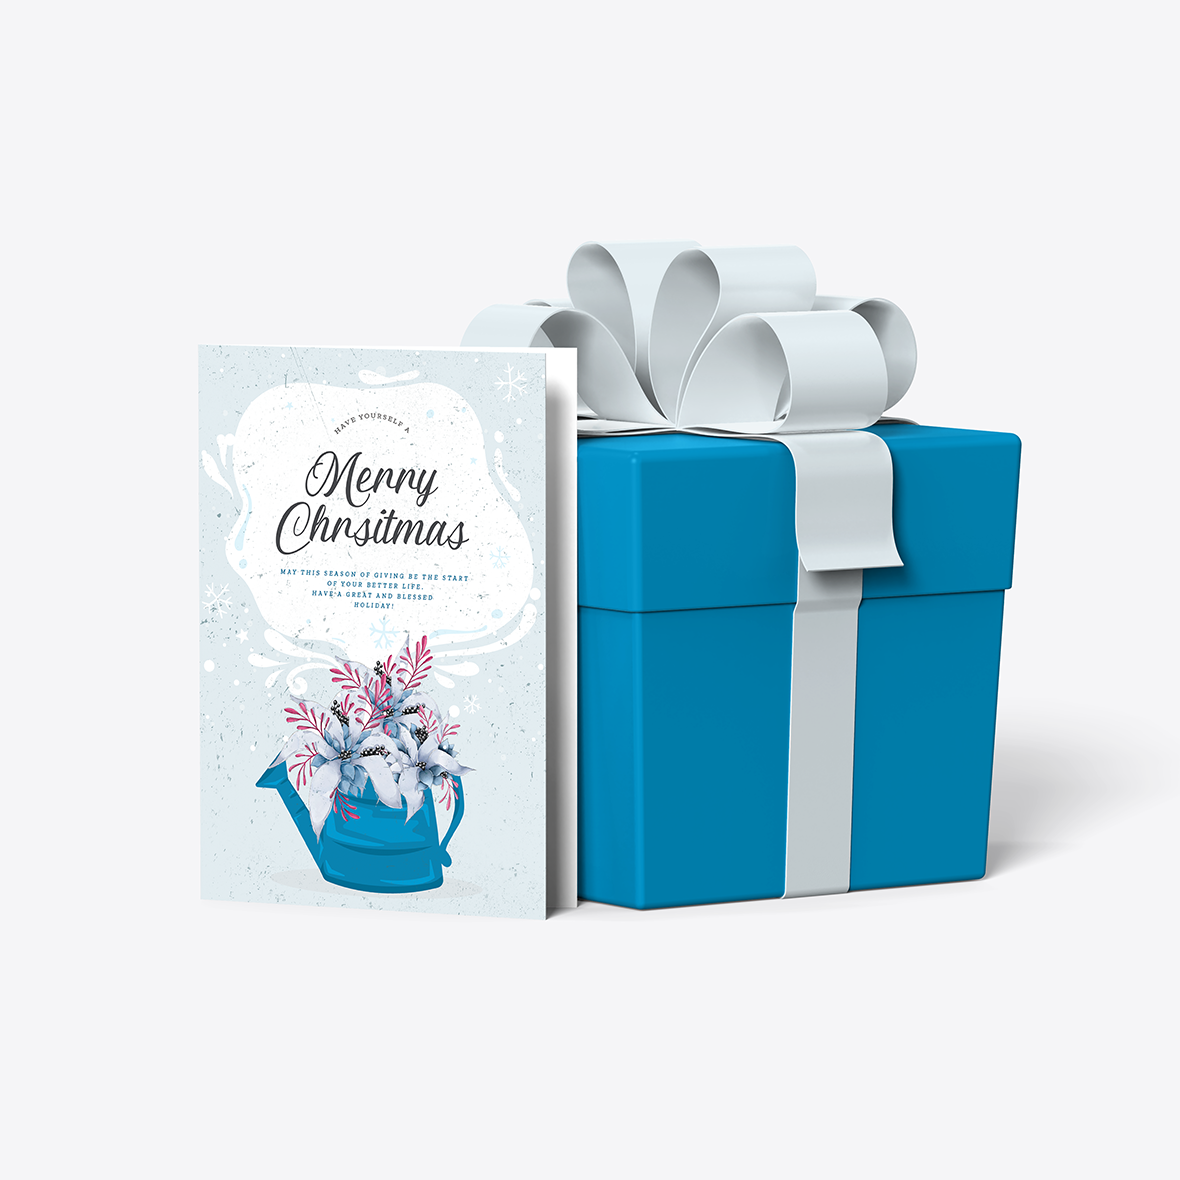 Christmas Greeting Card Mockup